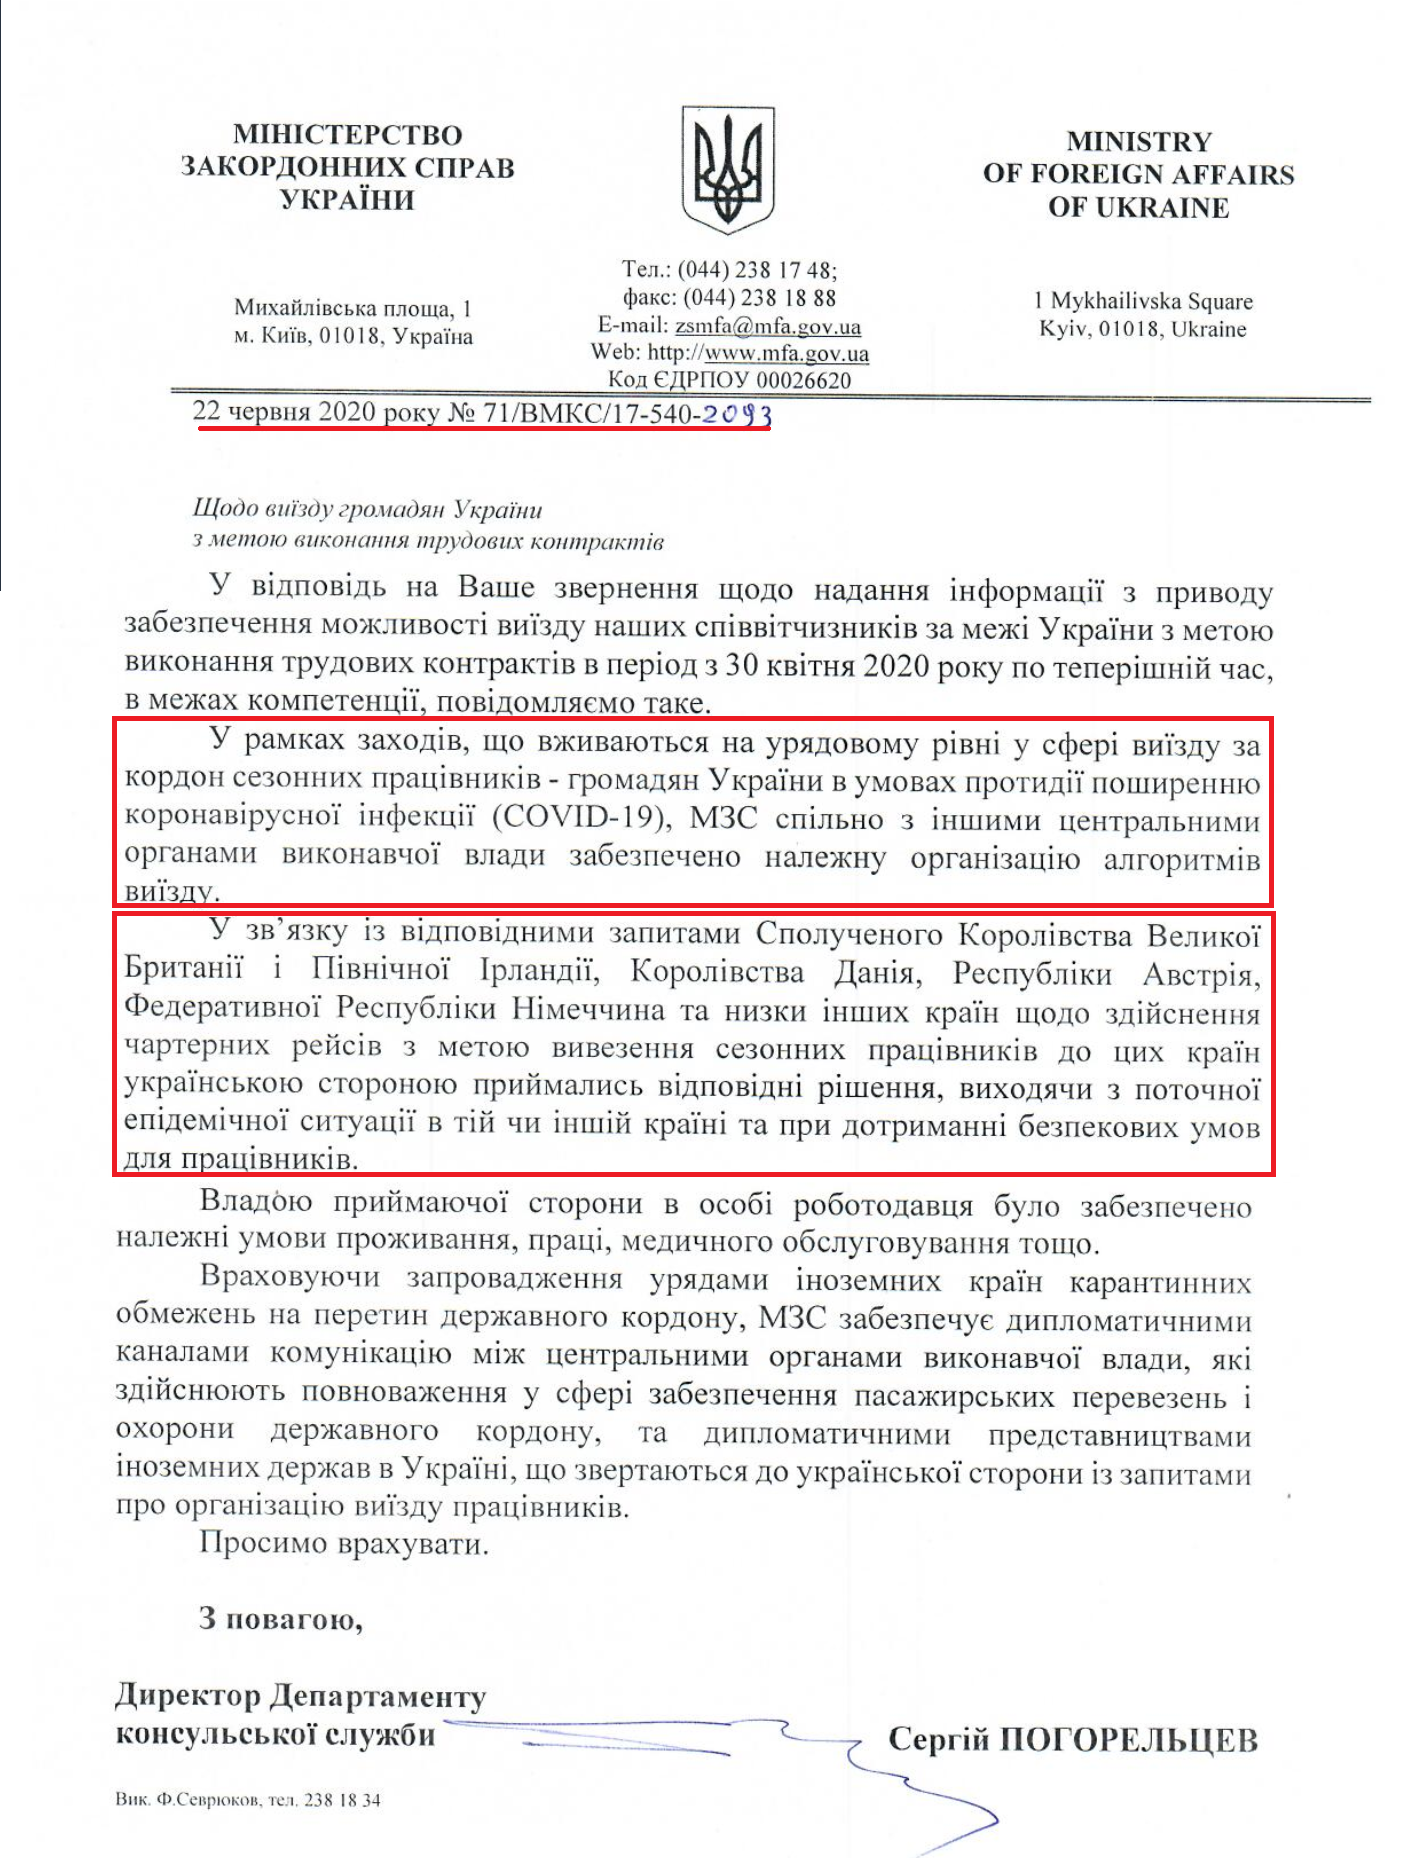 Лист Міністерства закордонних справ України від 22 червня 2020 року